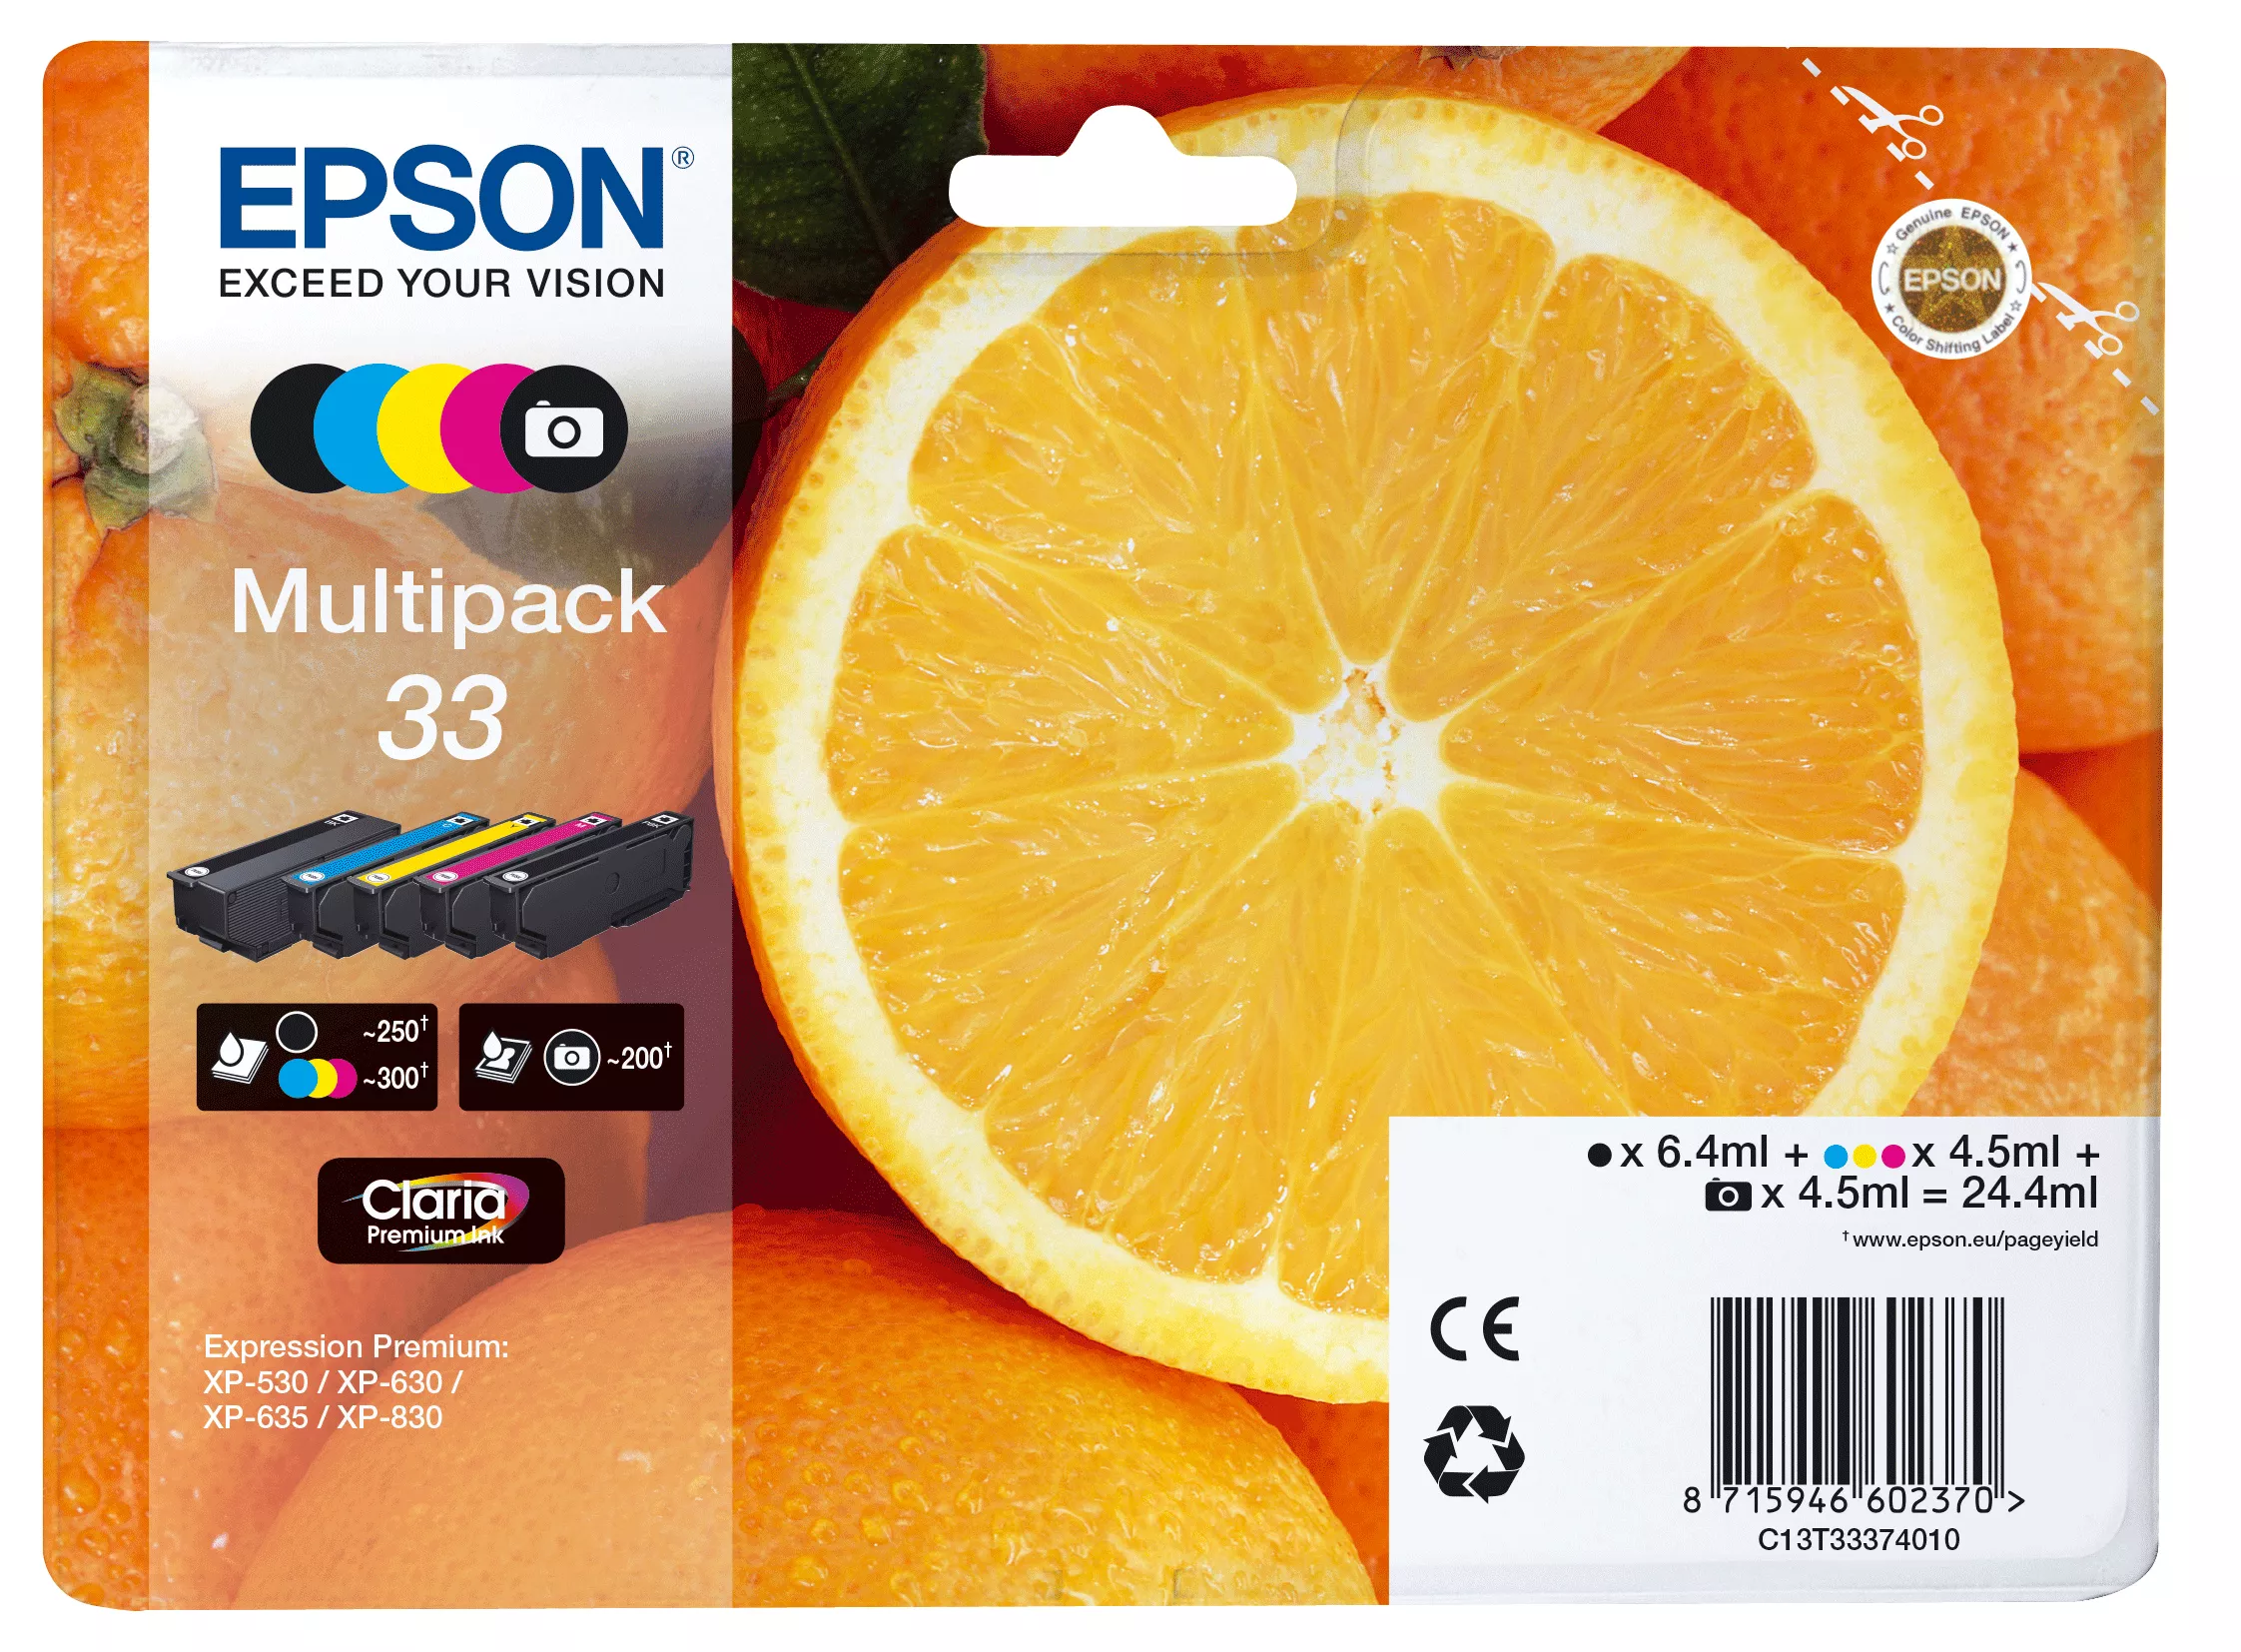 Achat EPSON Multipack Oranges non alarmé - Encre Claria - 8715946645278